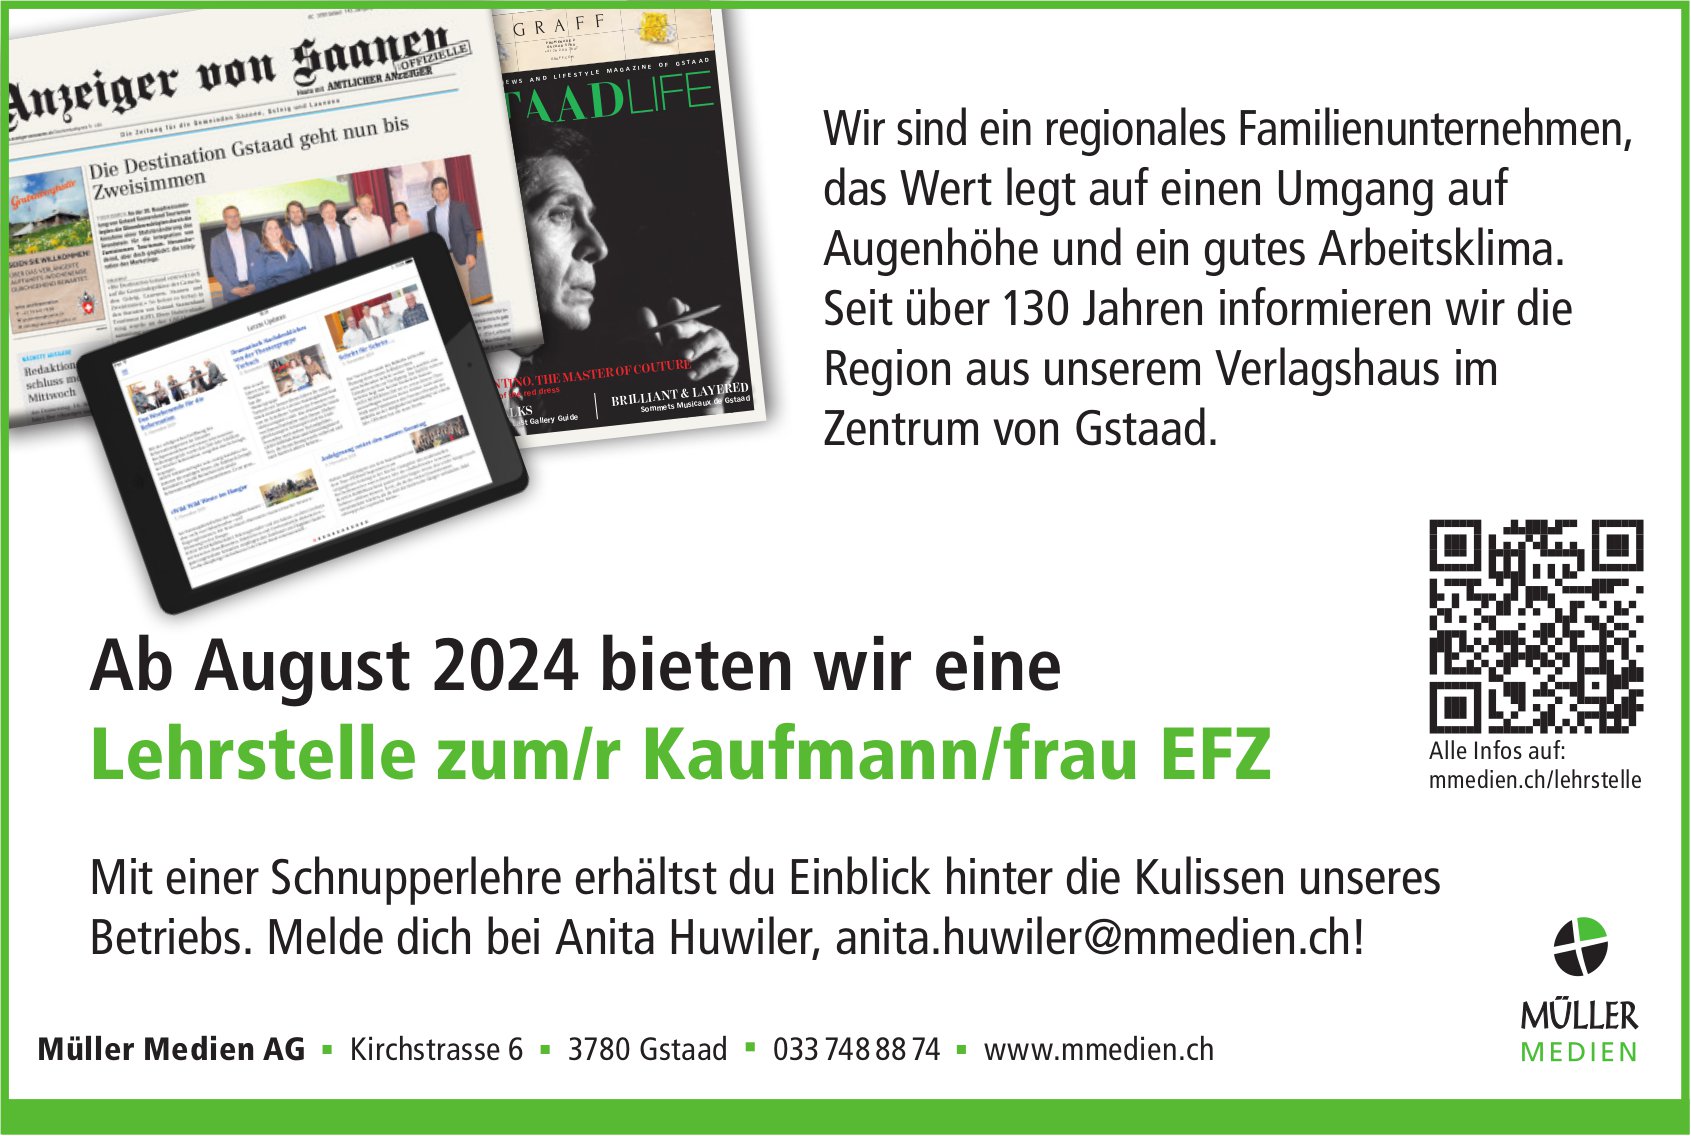 Lehrstelle zum/r Kaufmann/frau EFZ, Müller Medien AG, Gstaad, zu vergeben